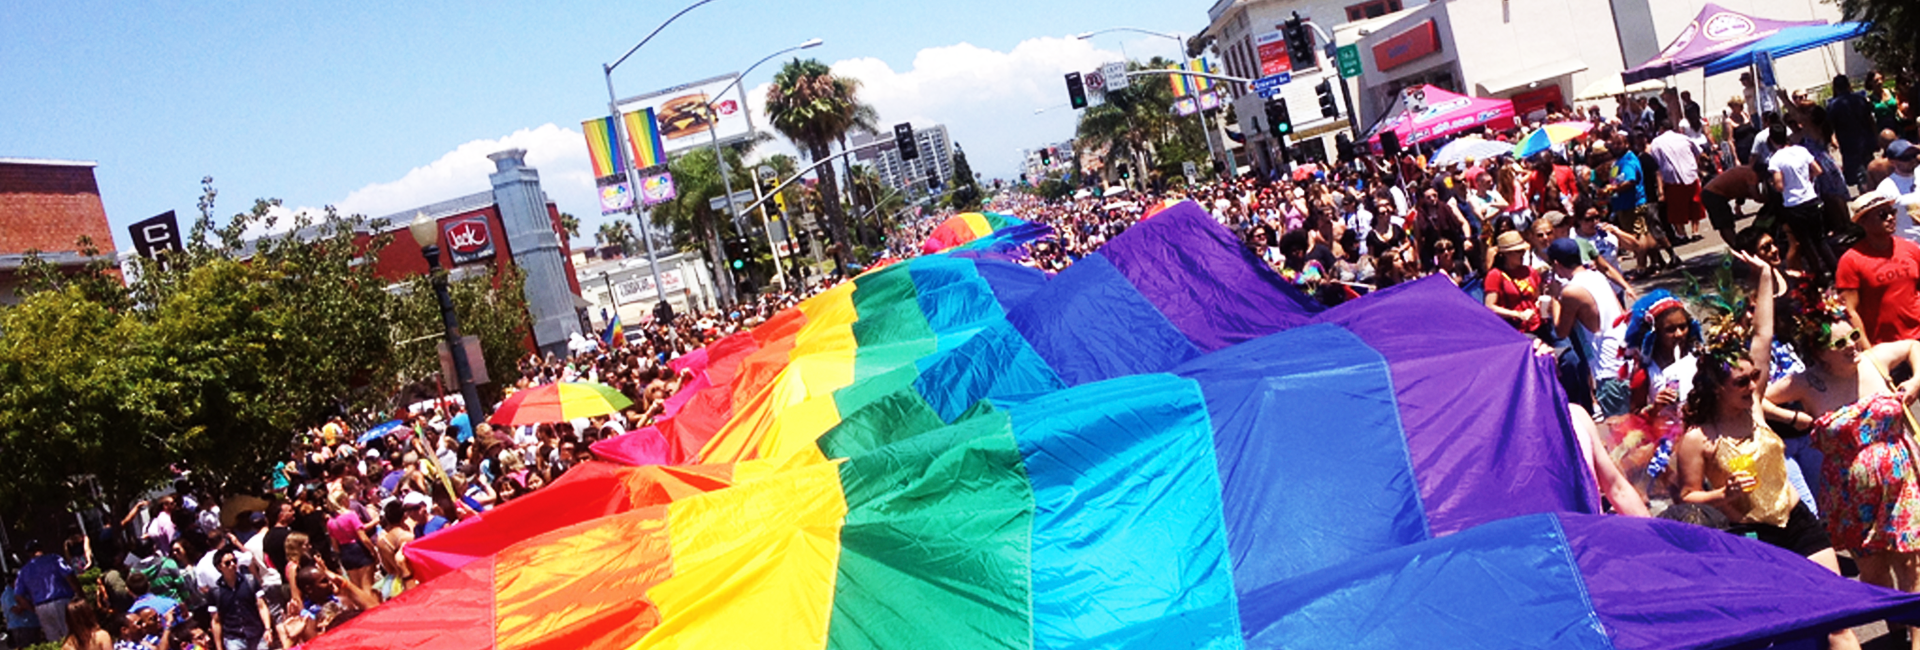 San Diego Gaypride Parade 62